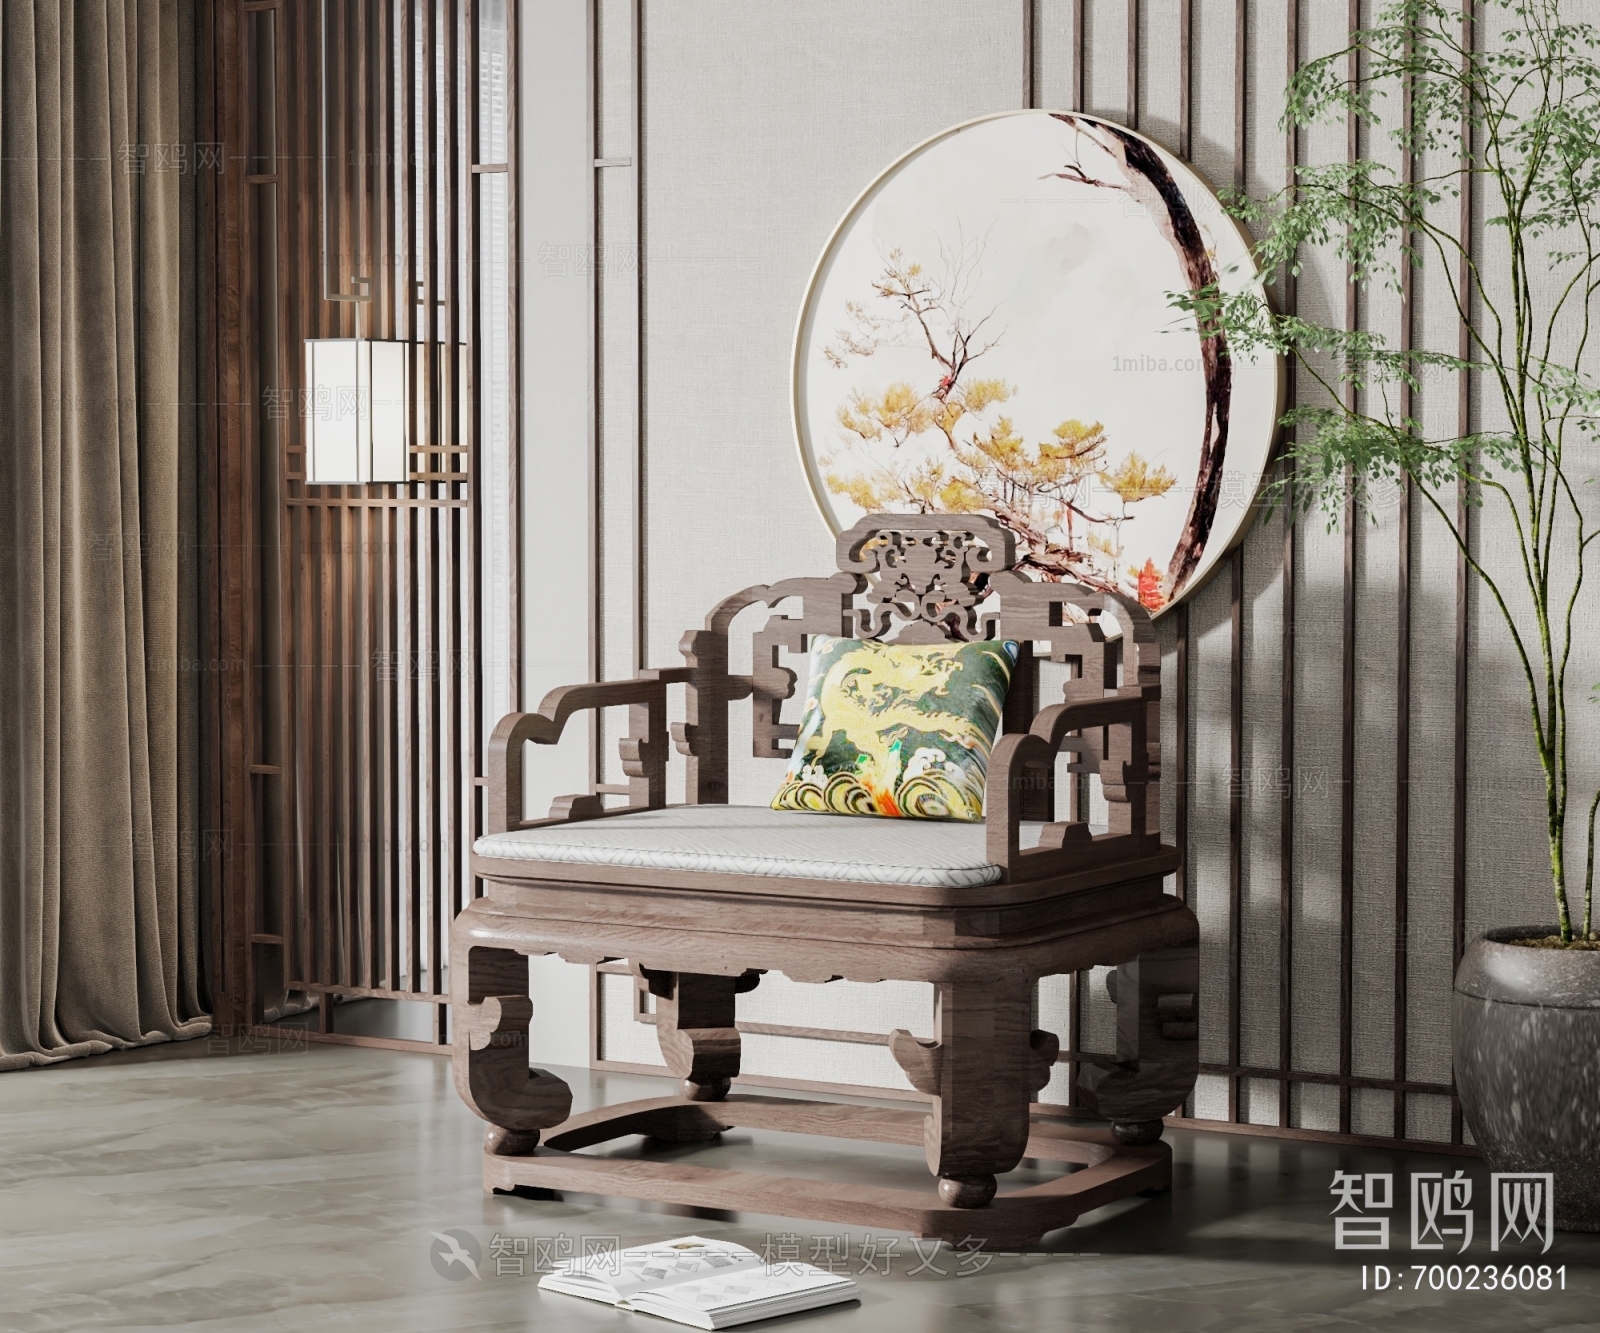 Chinese Style Single Sofa